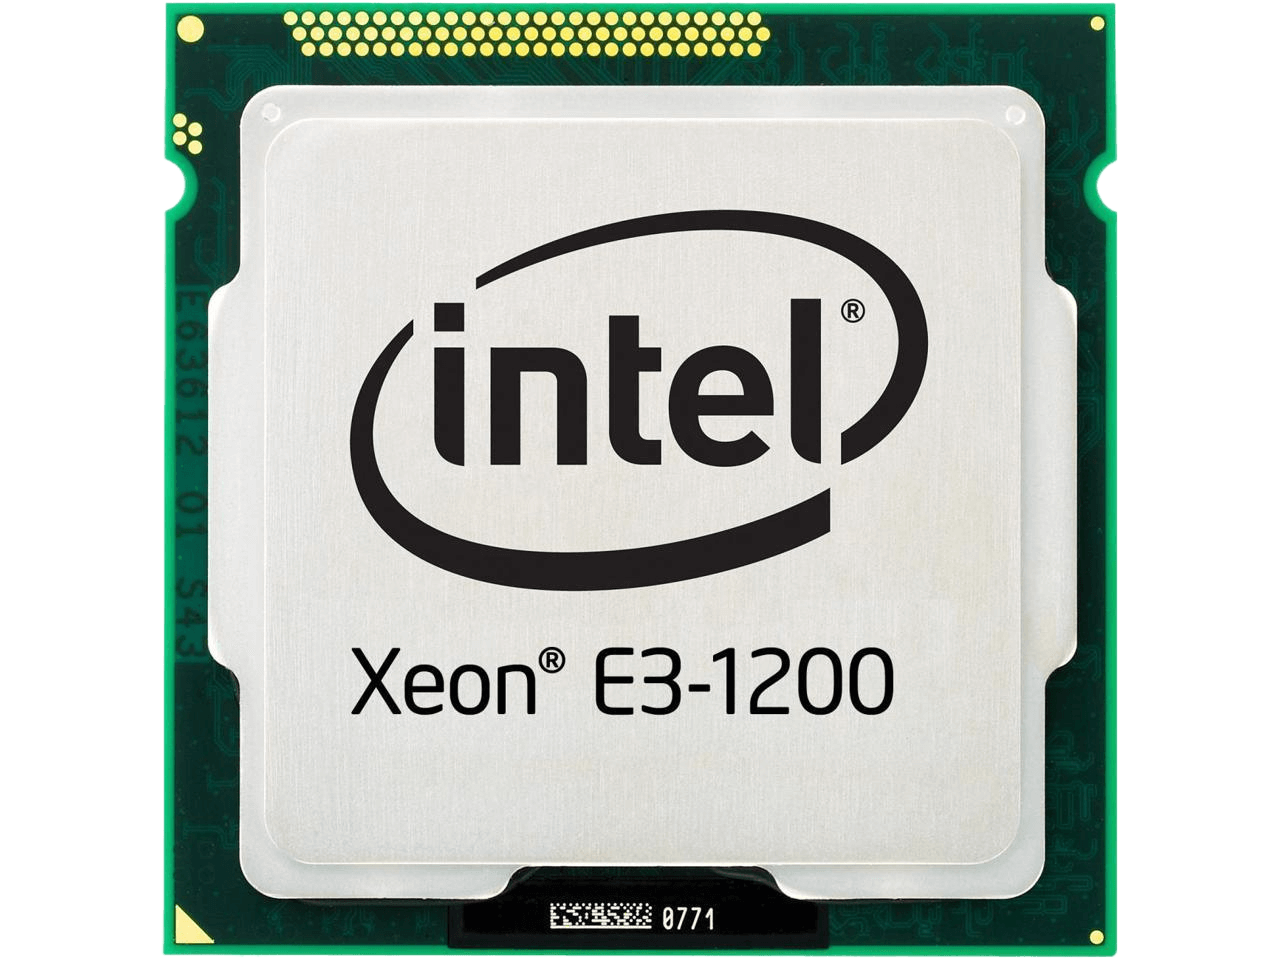 Intel Xeon E3-1240V2 Ivy Bridge 3.4 GHz 8MB L3 Cache LGA 1155 69W 682783-L21 Server Processor for HP DL320e Gen8